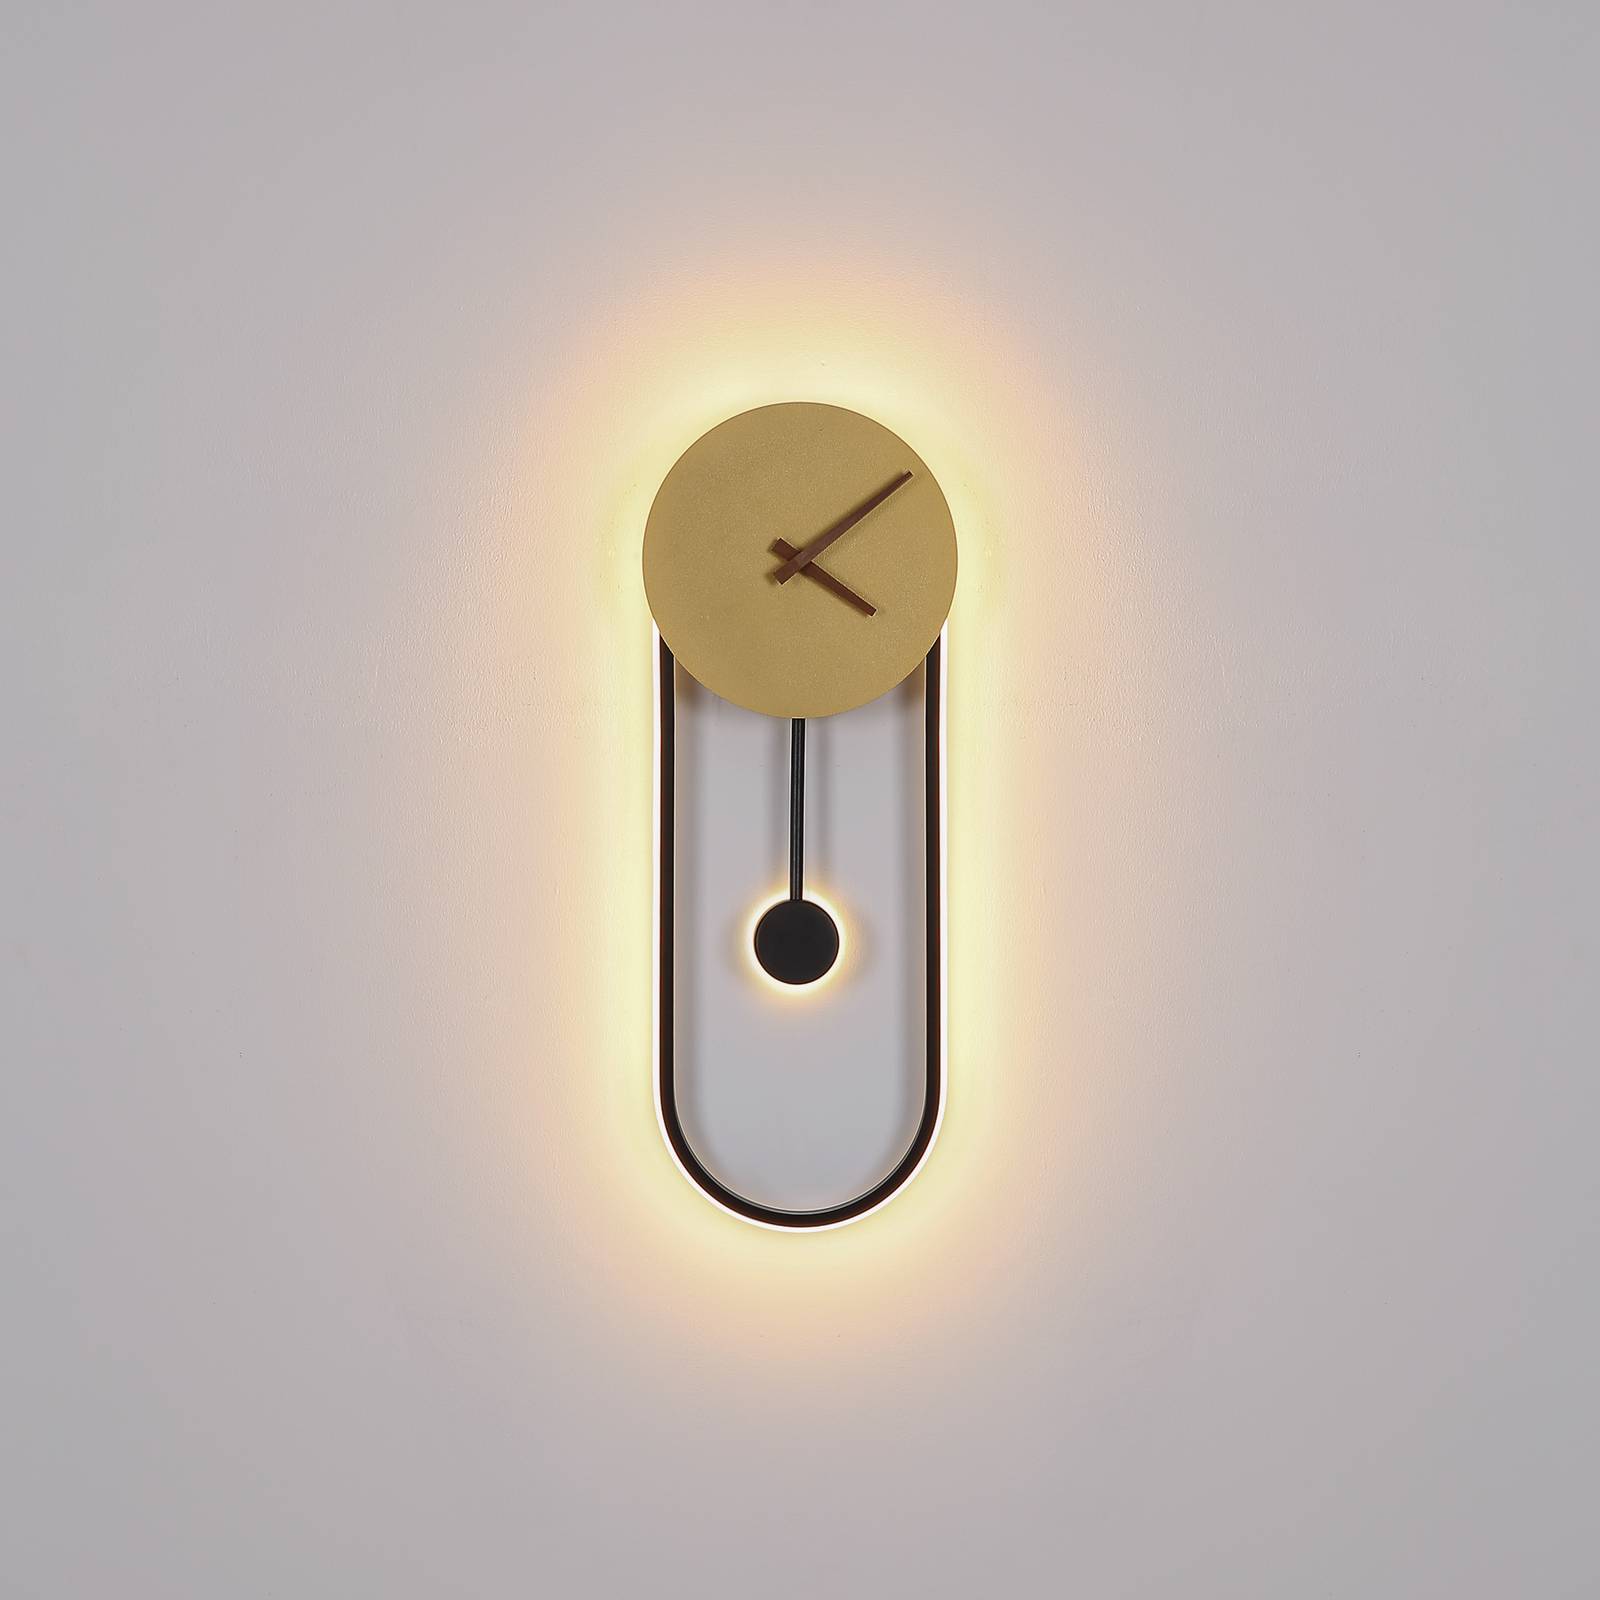 LED-Wandlampe Sussy mit Uhr, schwarz/gold von Globo